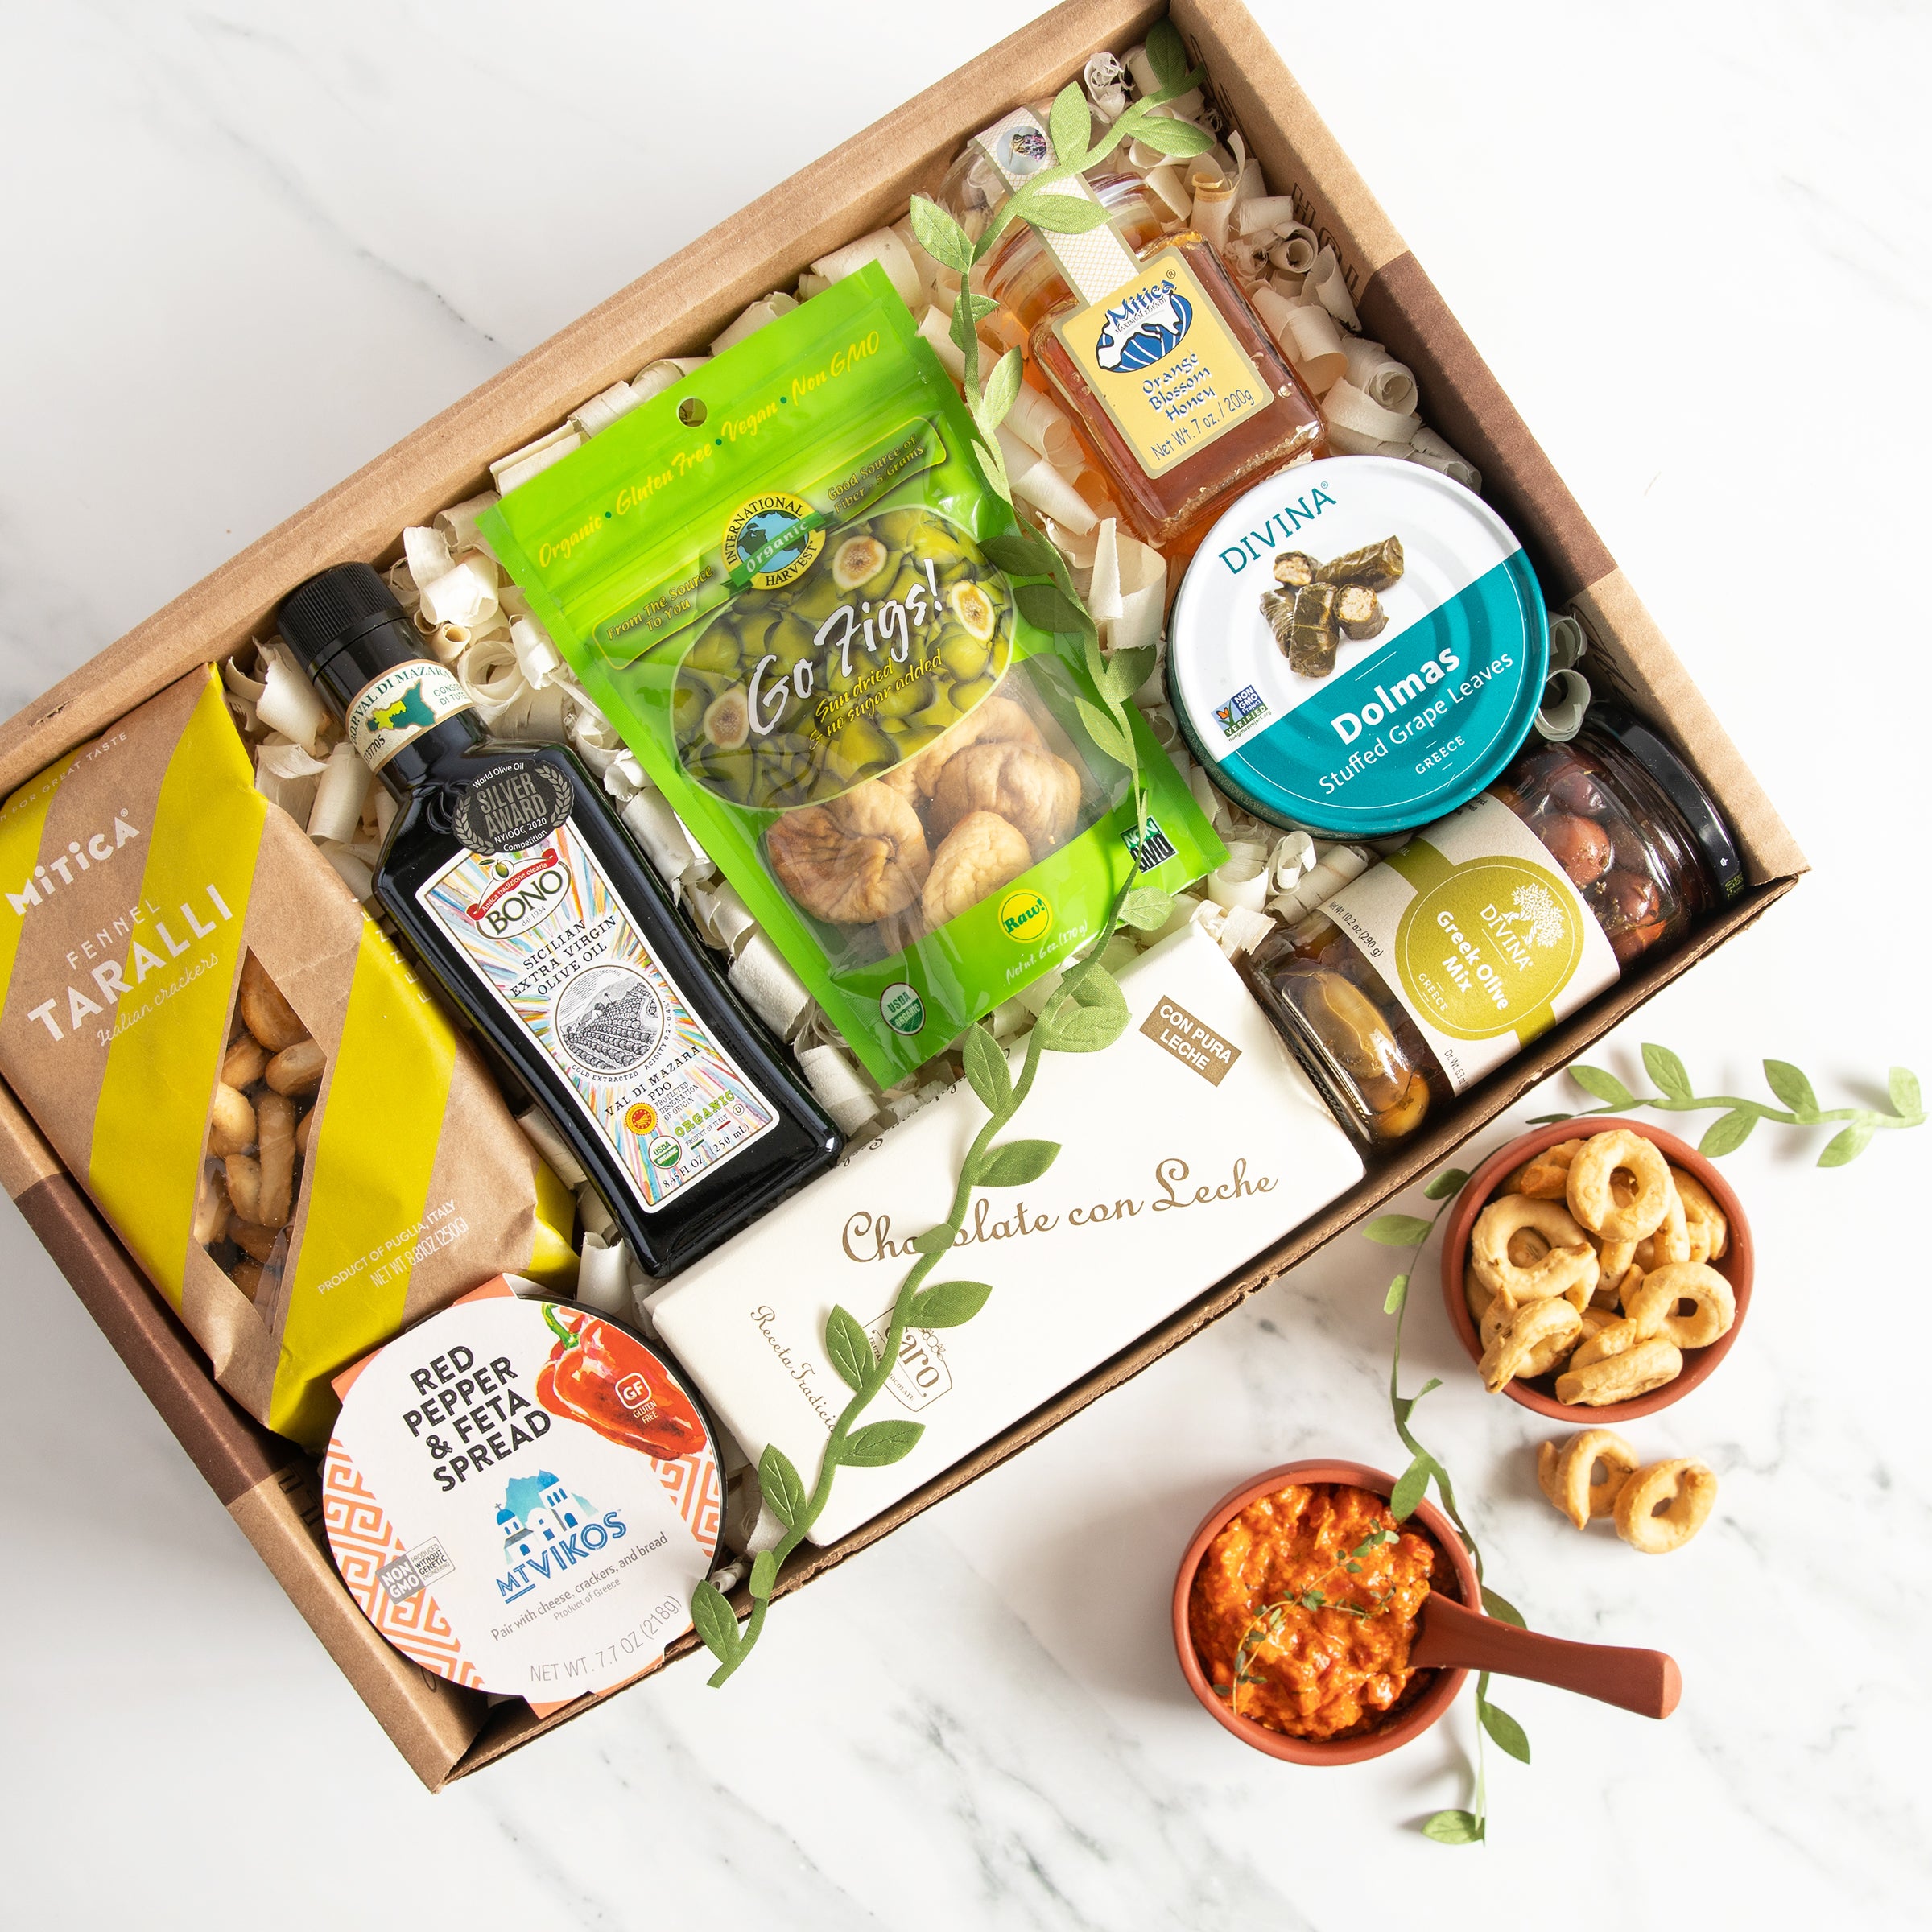 Khám phá những hương vị tuyệt vời của Địa Trung Hải với quà tặng đầy đủ trong một chiếc hộp. Tận hưởng những trải nghiệm ẩm thực hoàn hảo từ các nước địa Trung Hải, cùng với những loại thực phẩm tinh túy. Hãy xem hình ảnh để có thể góp phần trải nghiệm trọn vẹn hơn! 